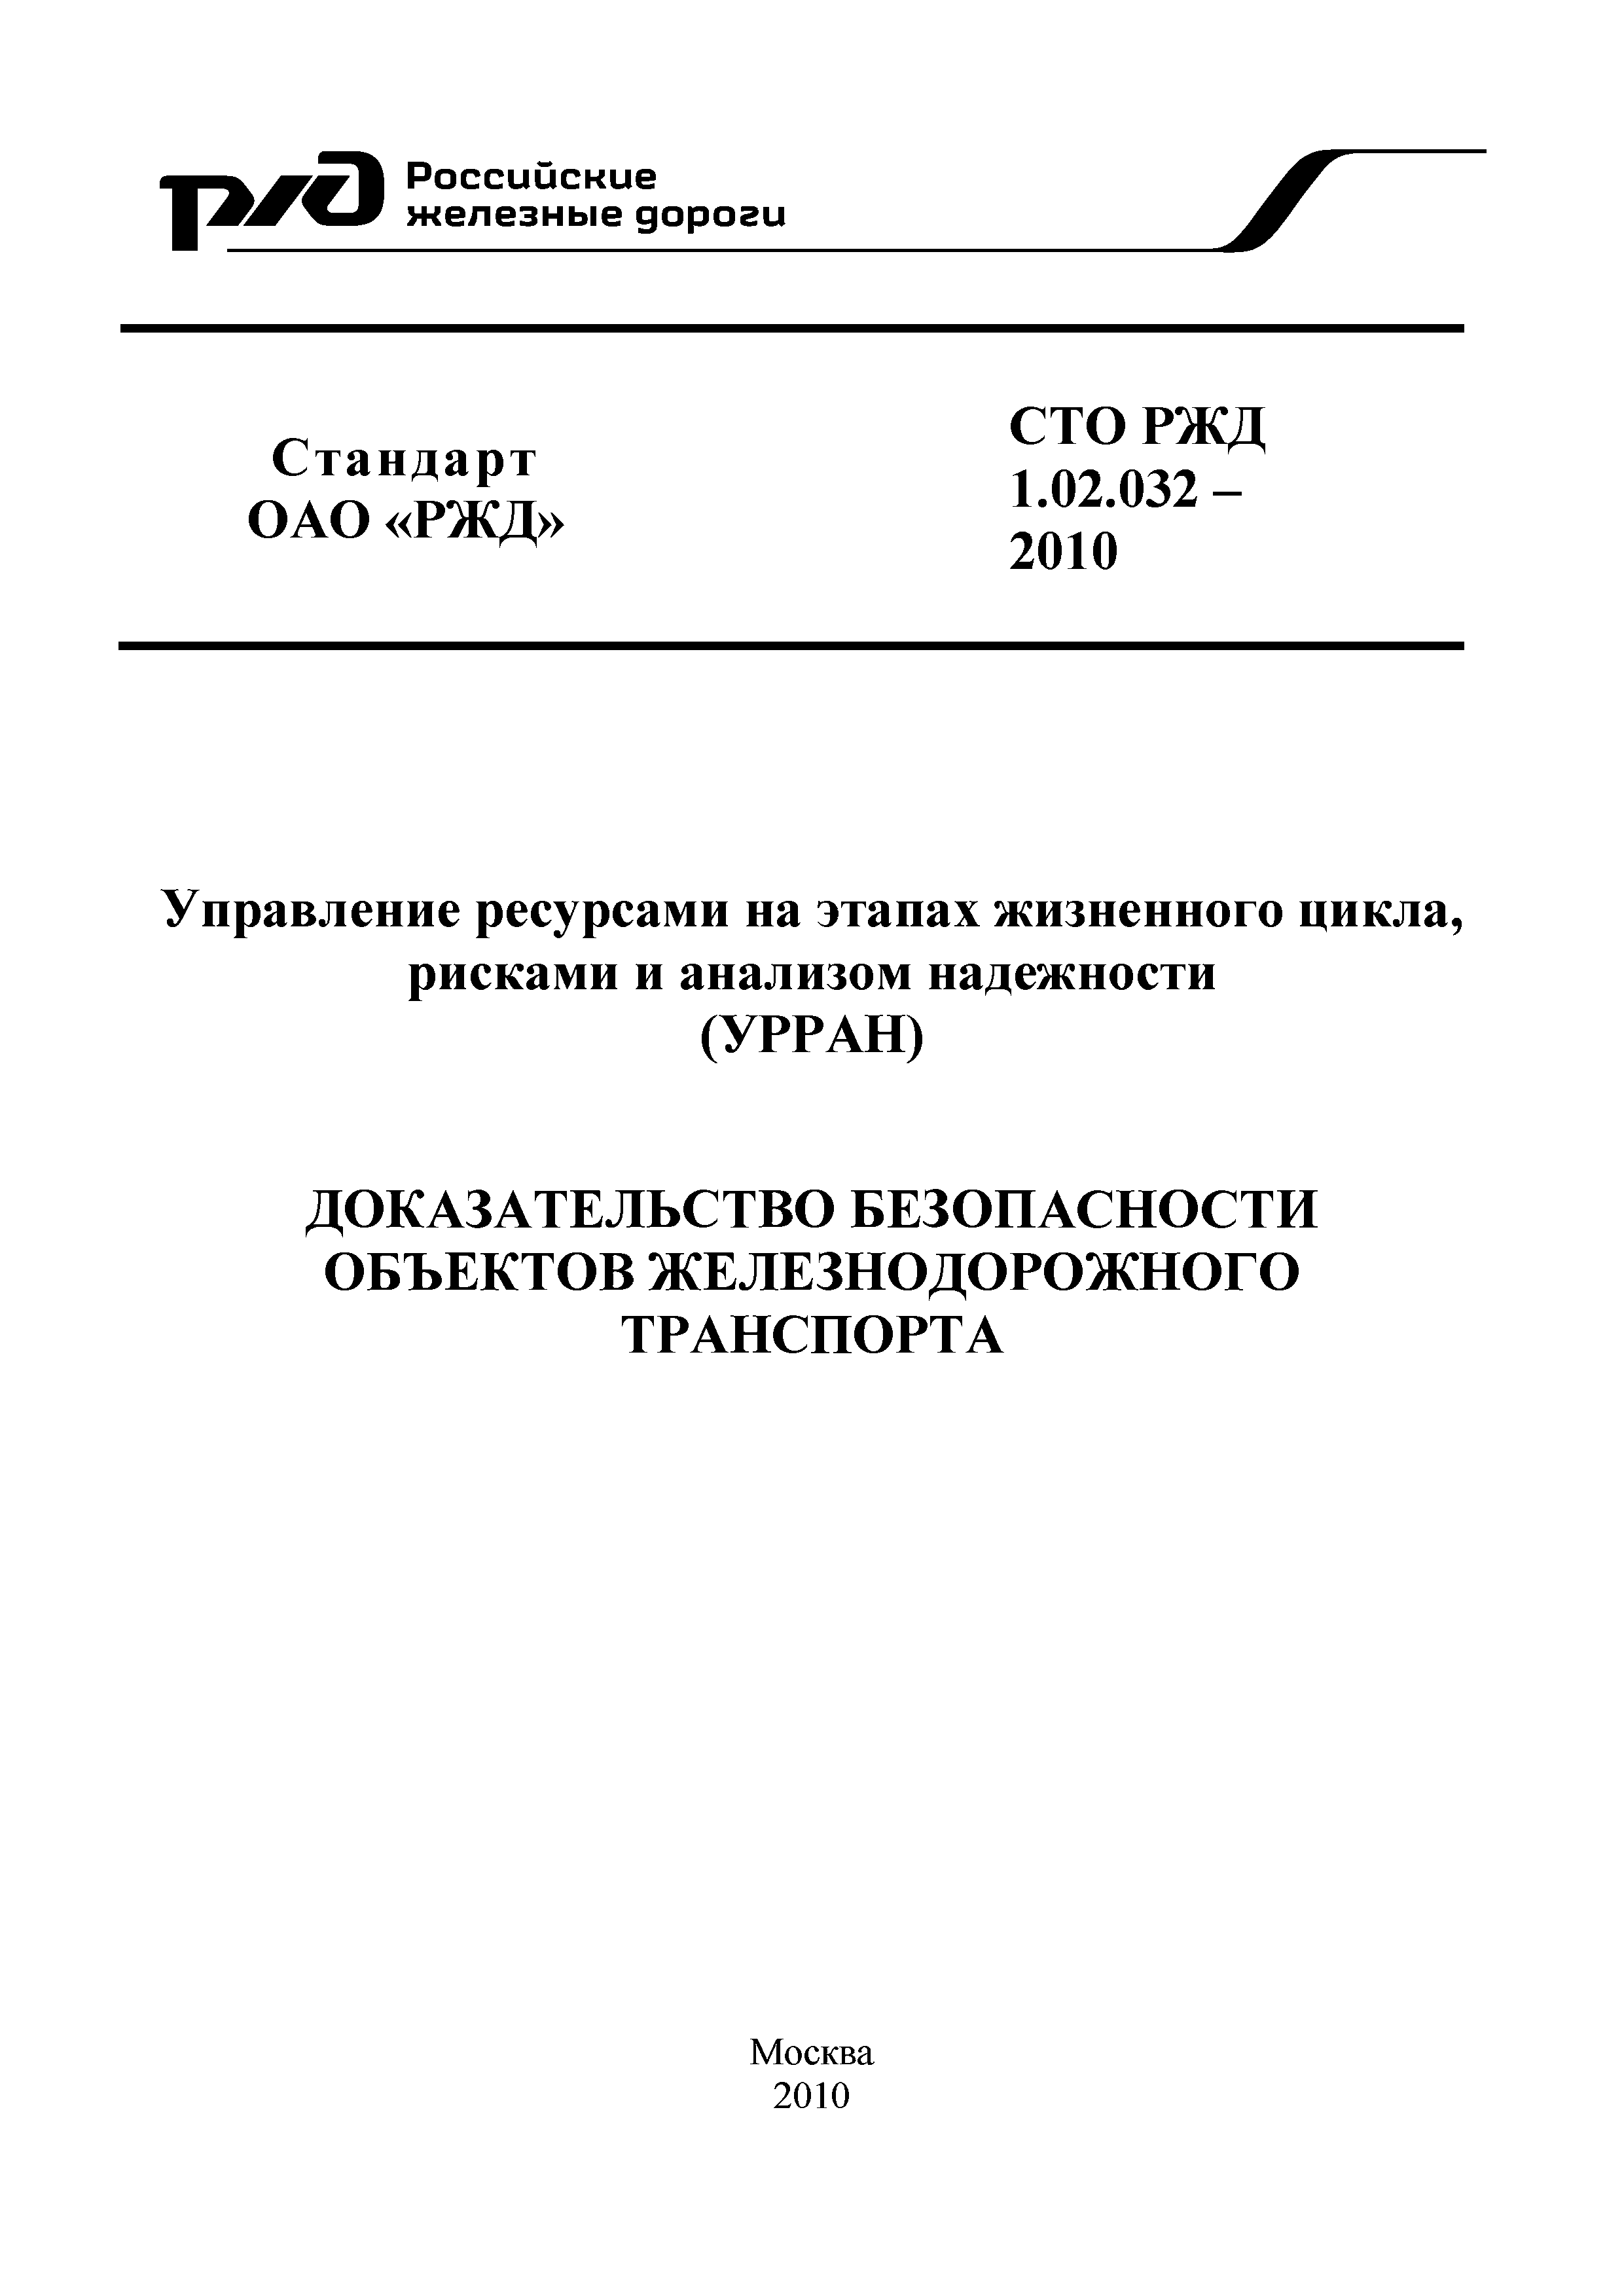 СТО РЖД 1.02.032-2010